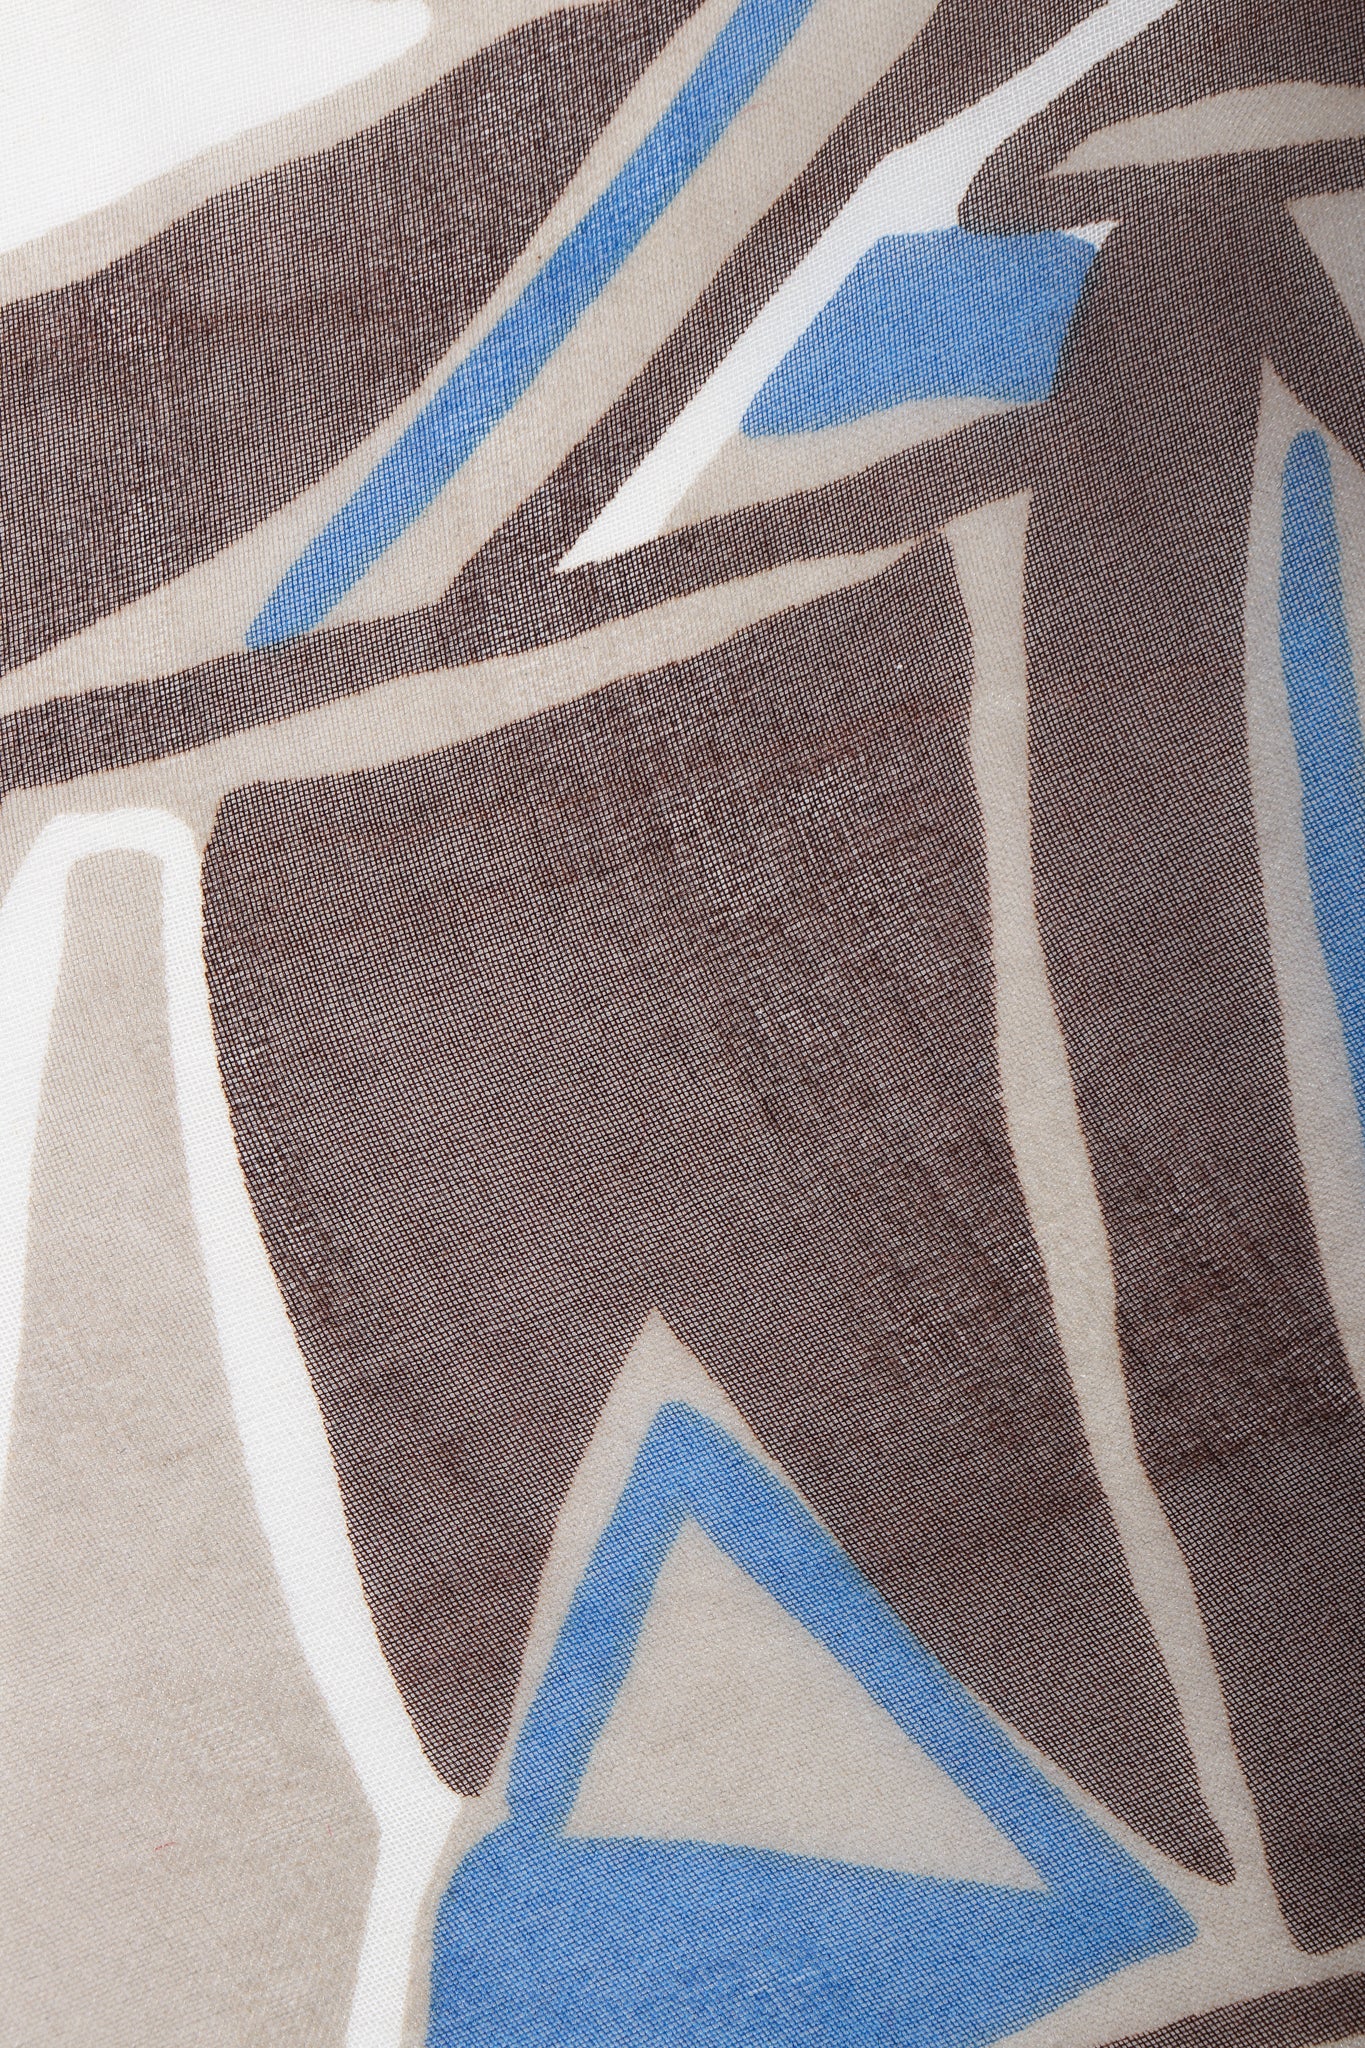 Vintage Yves Saint Laurent YSL Rive Gauche Wax Print Ankara Organza fabric and wear